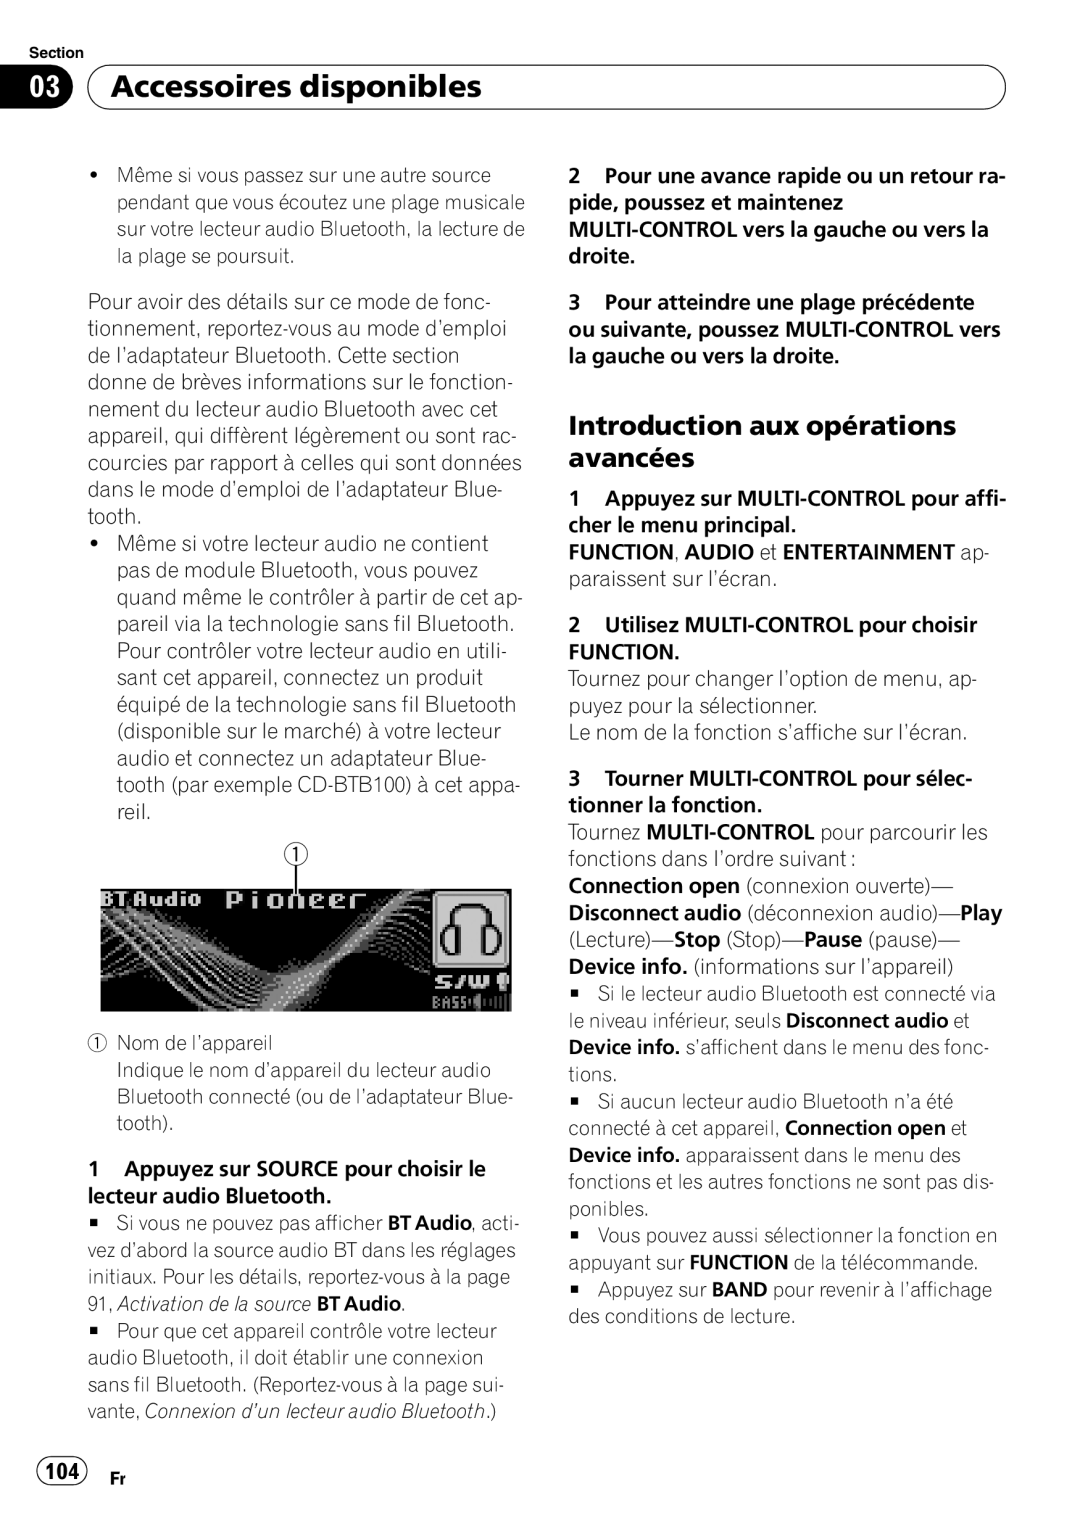 Pioneer DEH-P5900IB operation manual 104 Fr, 03Accessoires disponibles, Introduction aux opérations avancées 